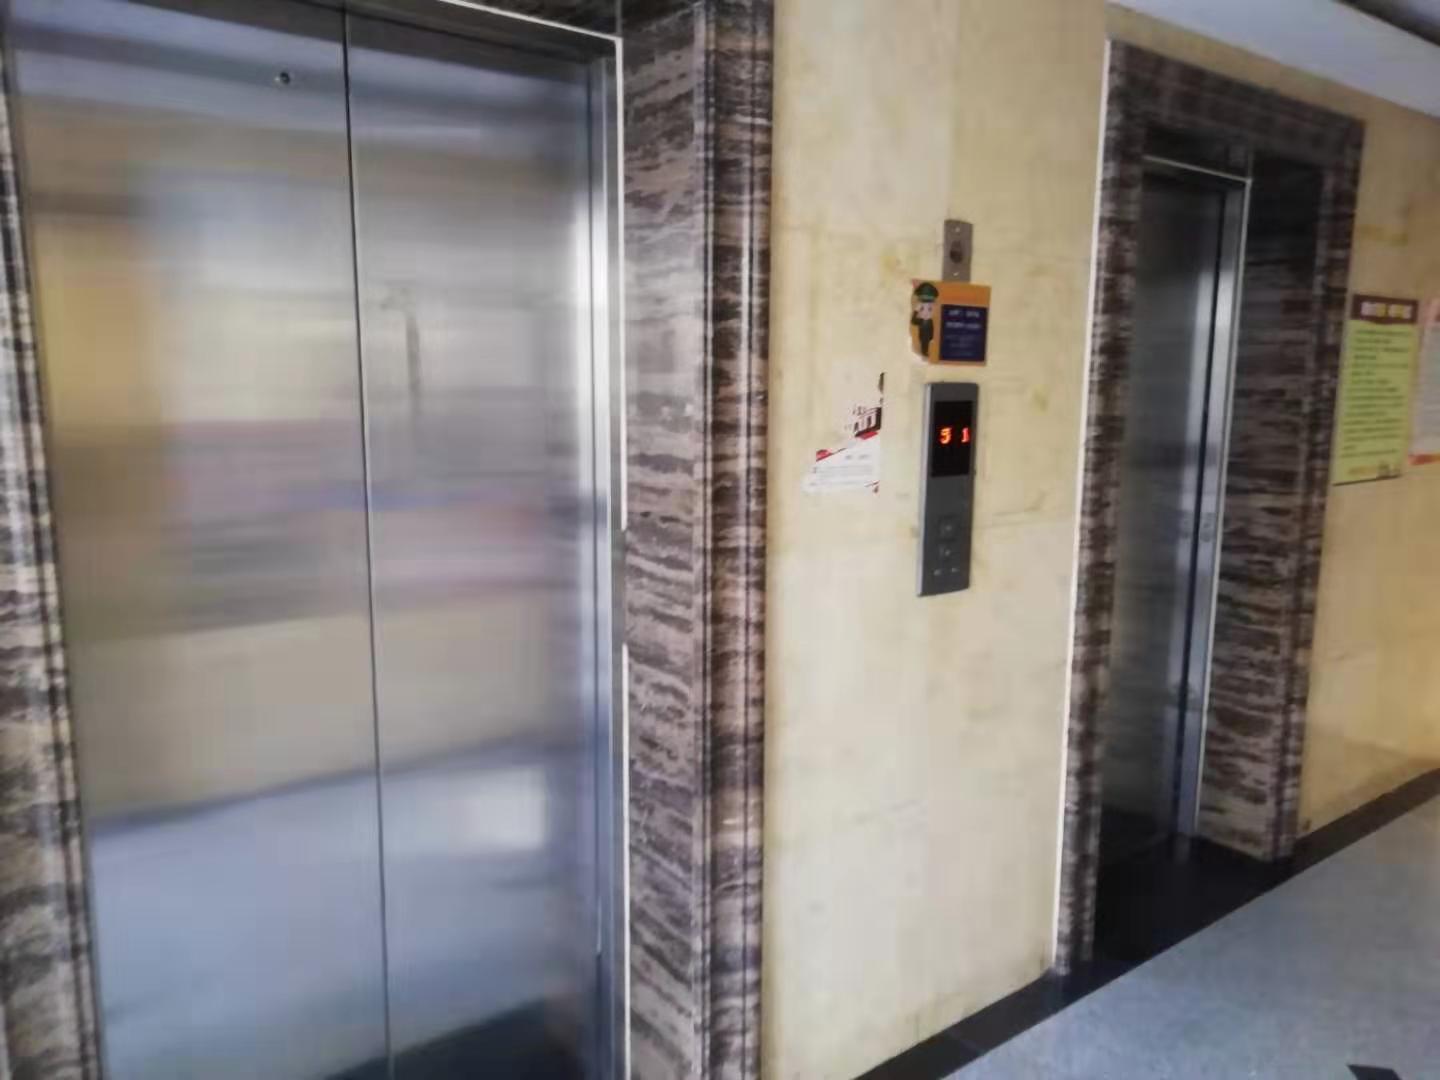 【阿曼寓所】小区有电梯吗?电梯有无专人维护?